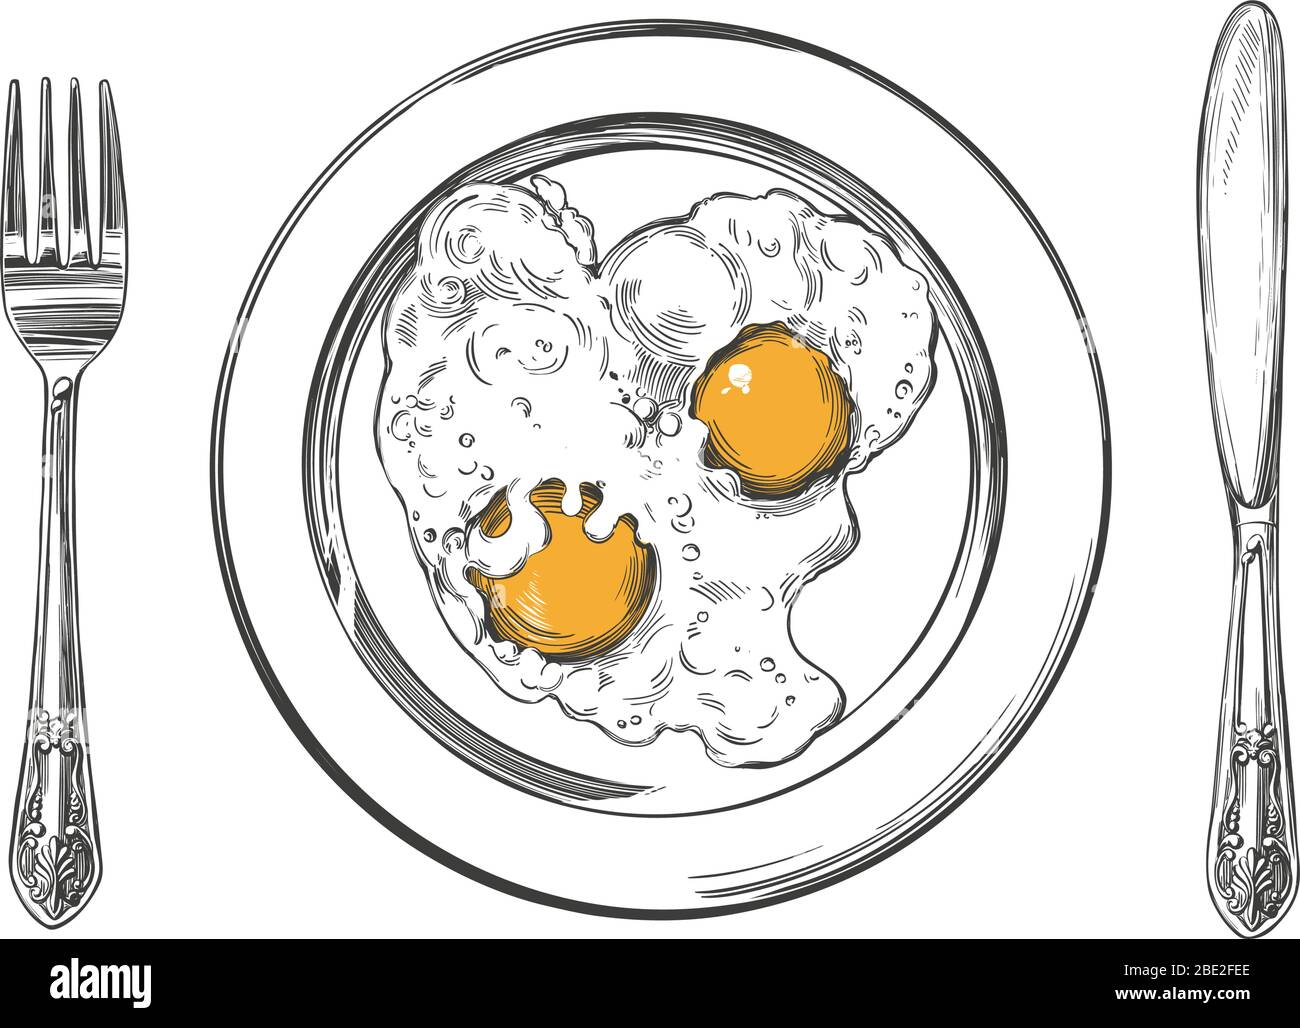 Frühstück, Eier auf einem Teller, Messer und Gabel, handgezeichnete Vektor-Illustration realistische Skizze Stock Vektor